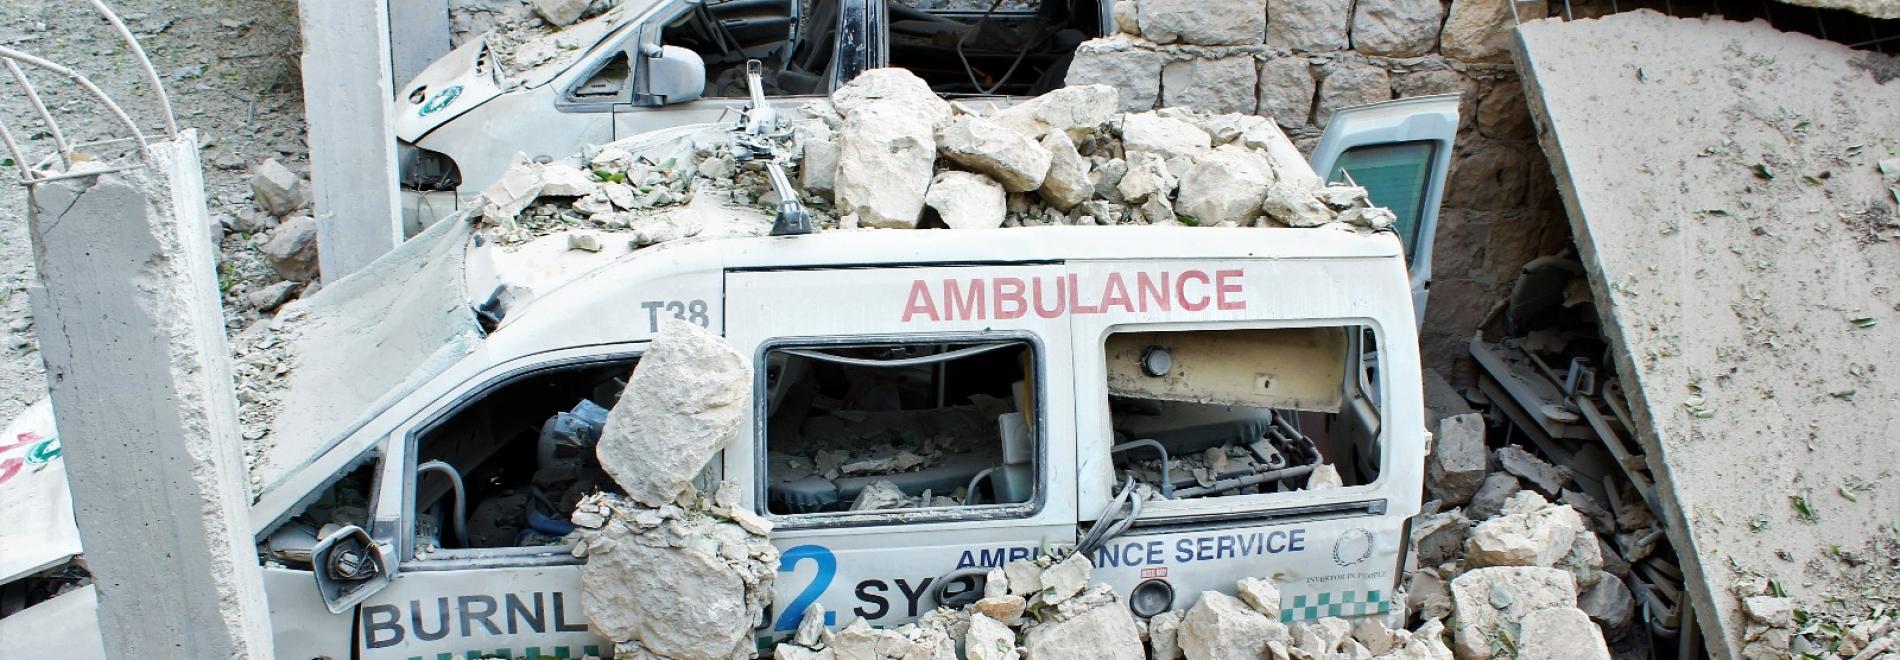 Von Bomben zerstörte Krankenwagen